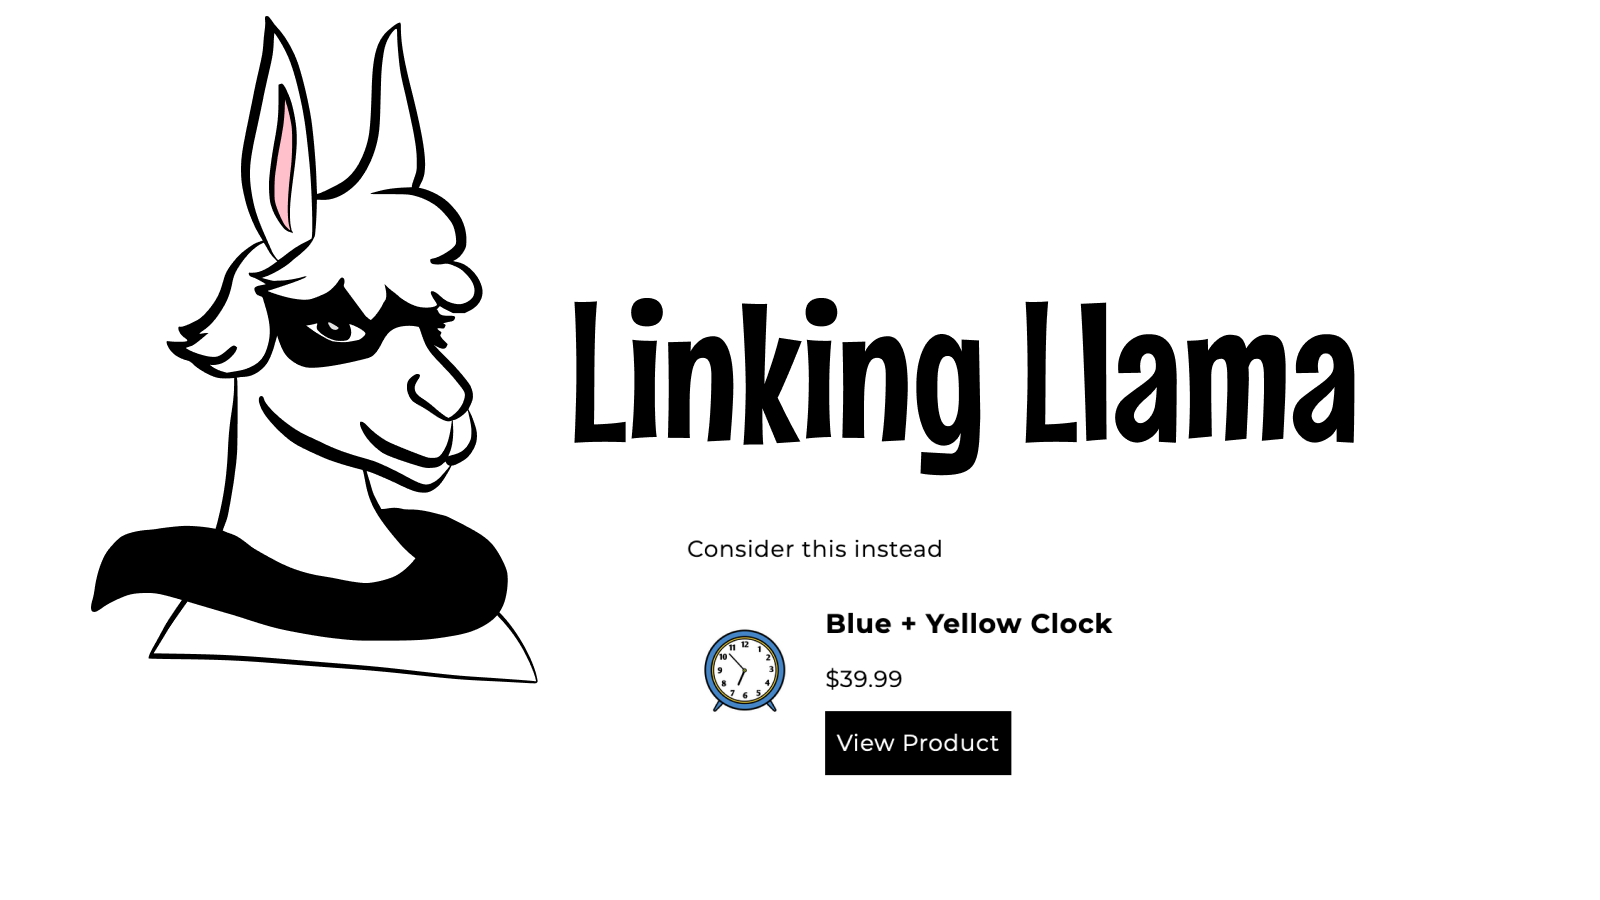 Linking Llama-logo met een alternatief productblok